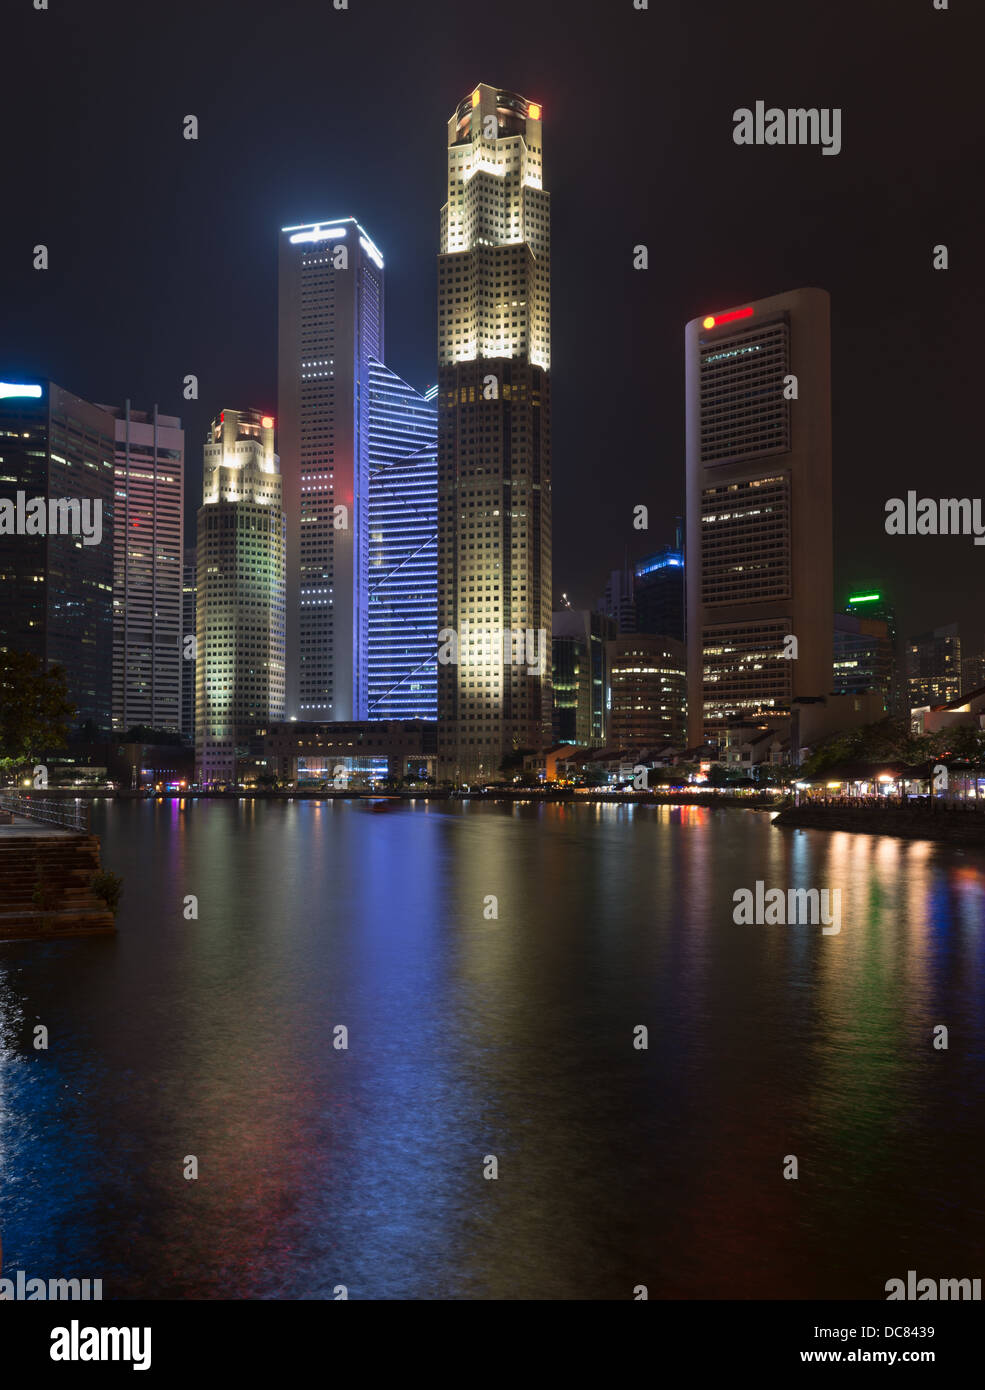 Quay Singapour avec de grands gratte-ciel lumineux dans le quartier central des affaires de nuit Banque D'Images